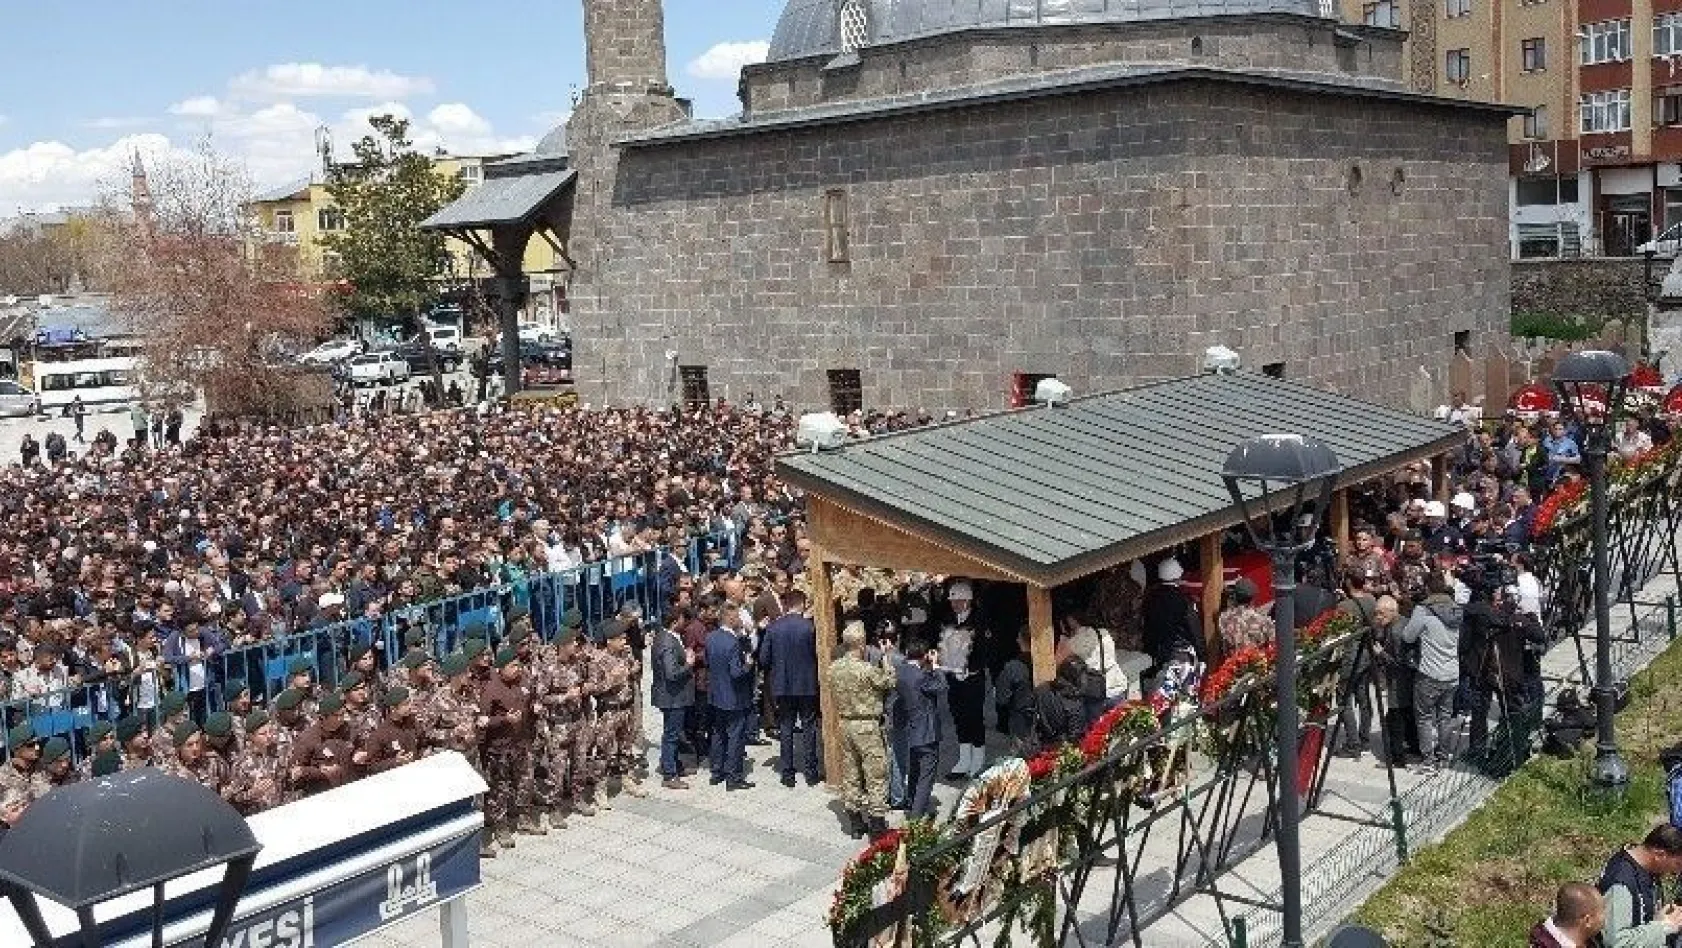 Şehit özel harekat polisi Erzurum'da son yolculuğuna uğurlandı
